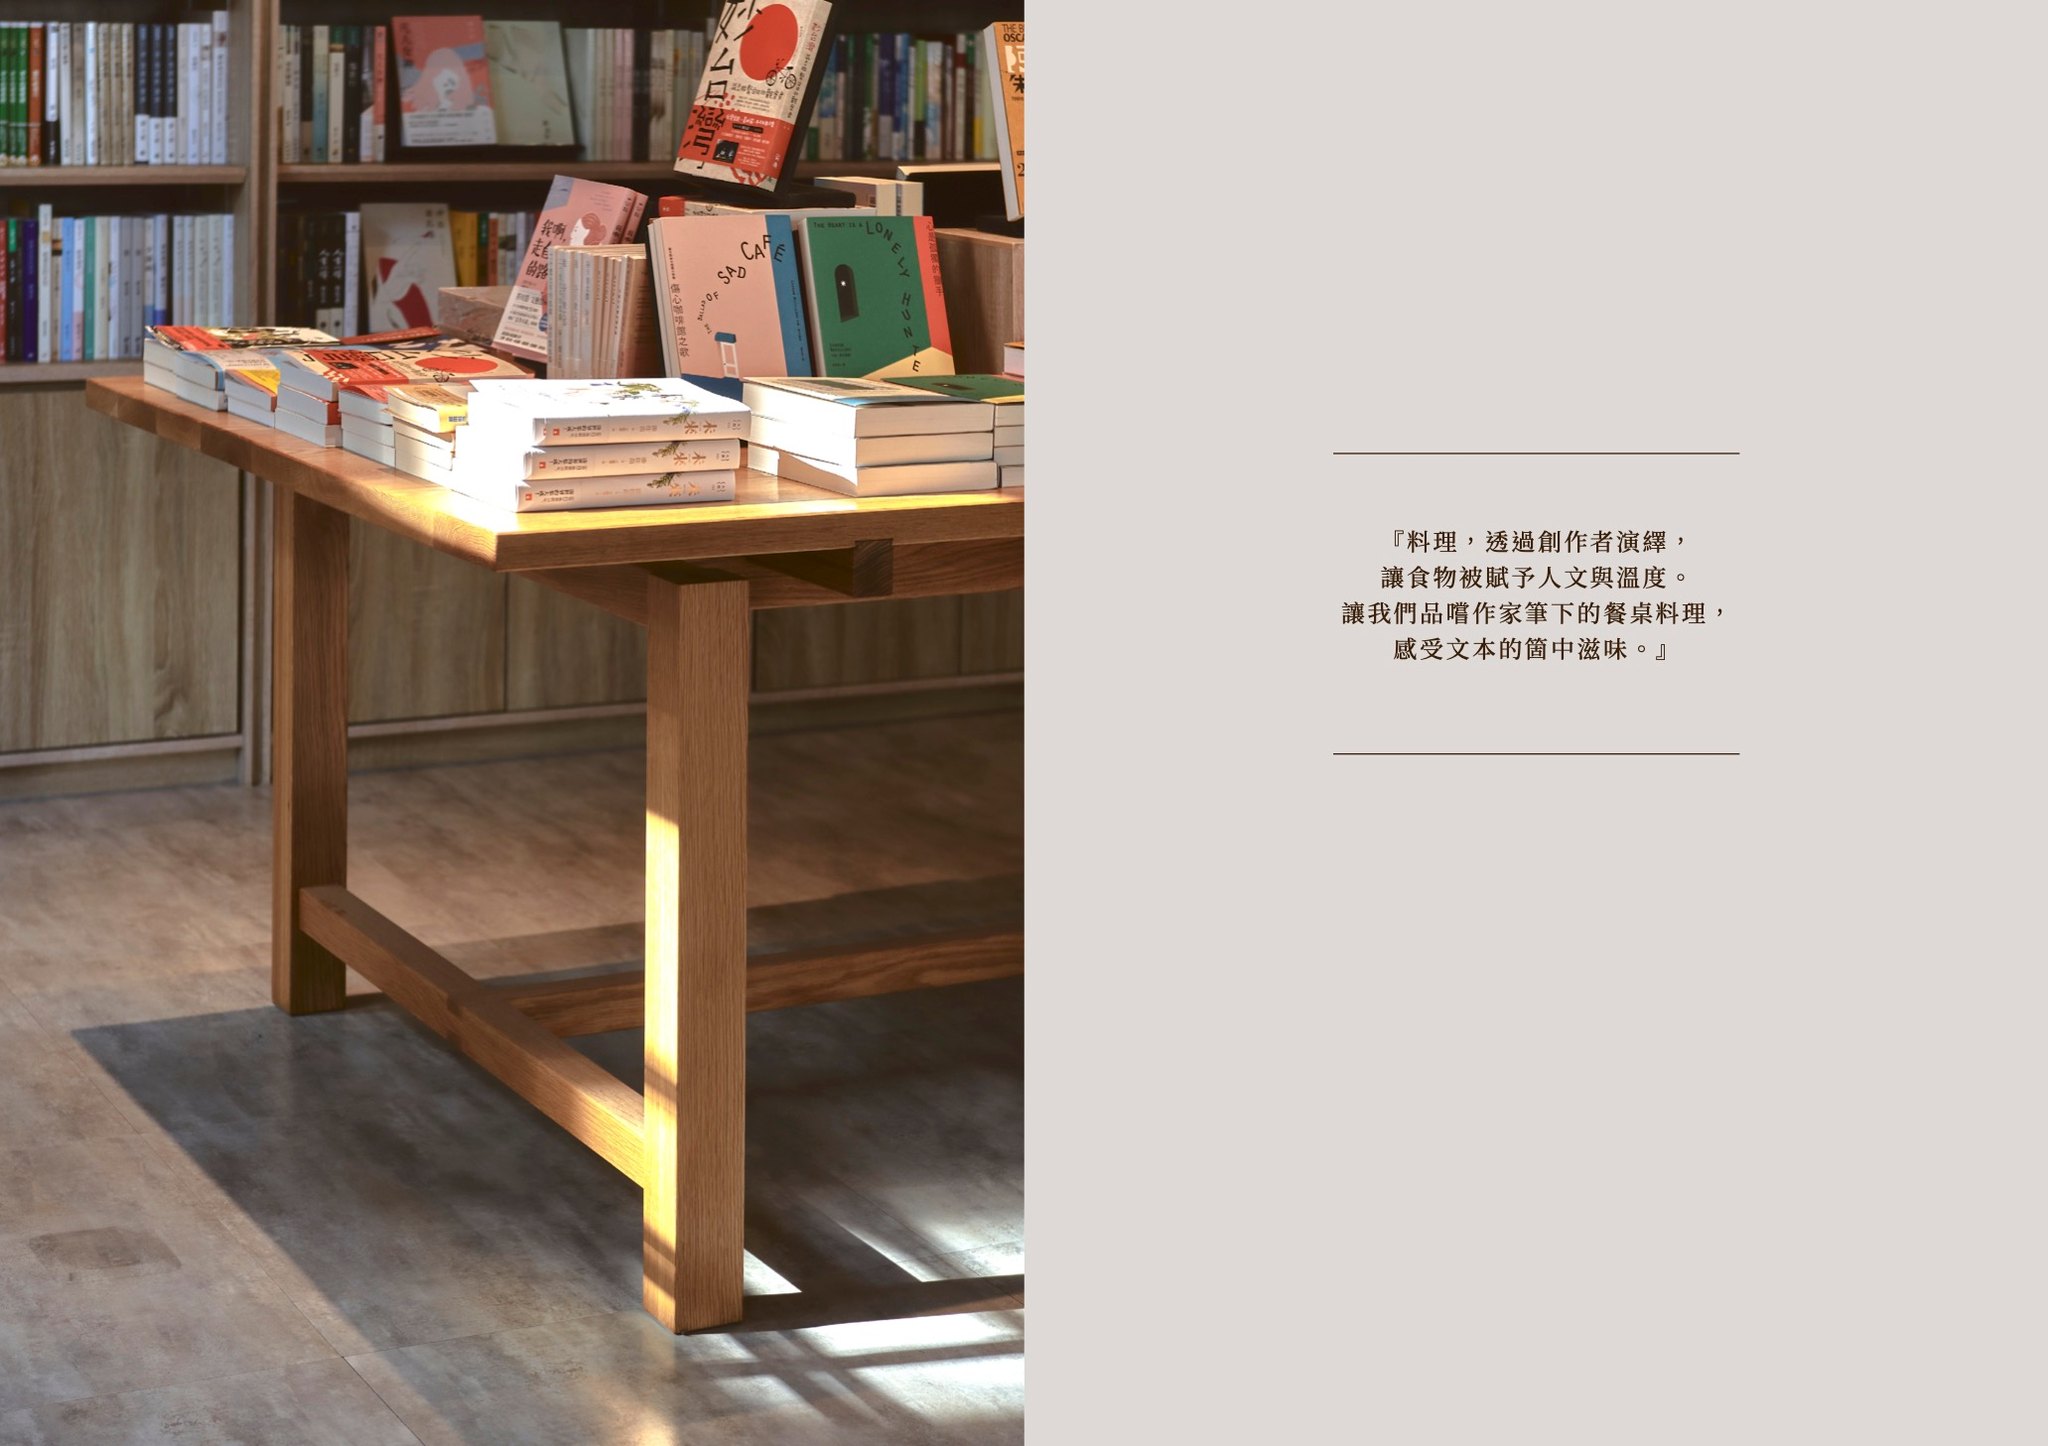 台中質感百年書店-中央書局，日本時代風格老建築古蹟咖啡餐廳 - kafkalin.com